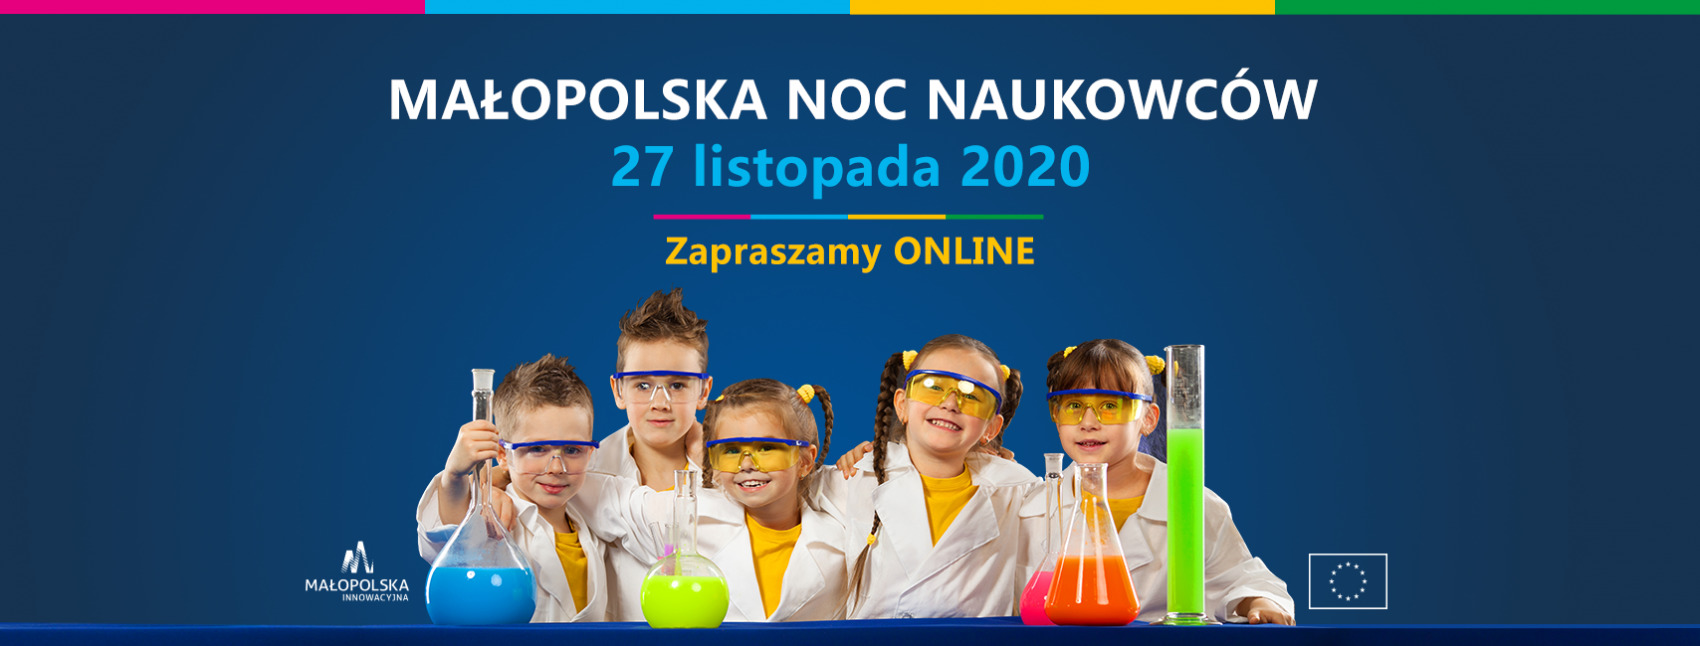 plakat - małopolska noc naukowców. 27 listopada 2020 - zapraszamy online. Dzieci z probówkami chemicznymi przebrae za naukowców.